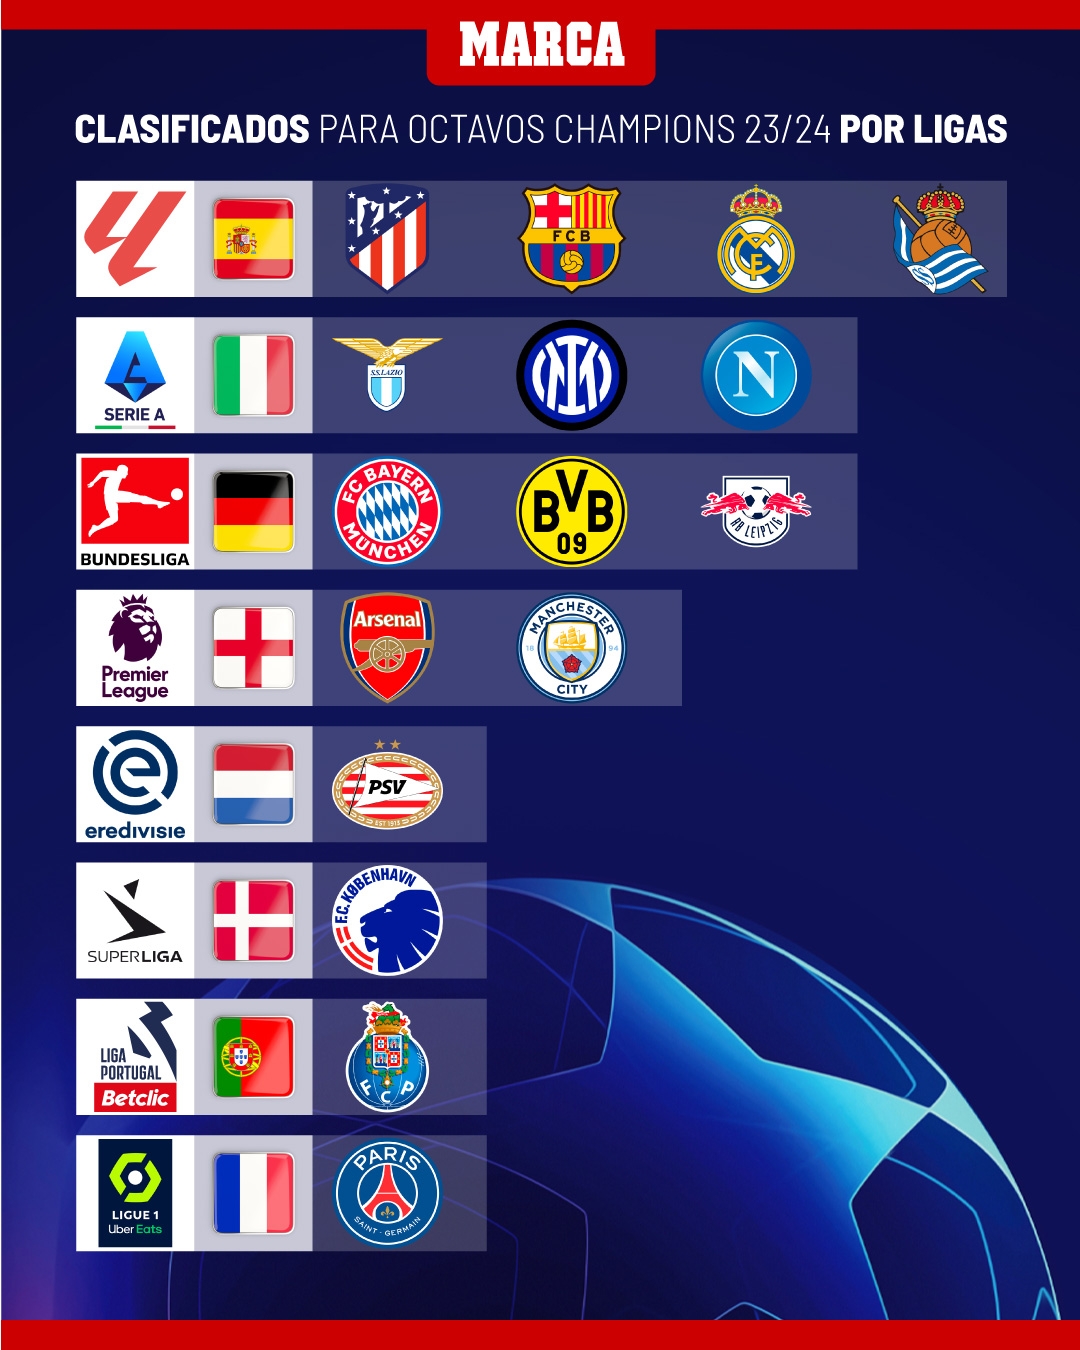 欧冠16强联赛分布：五大联赛占据13席，西甲4队+英超2队，德甲意甲各3队